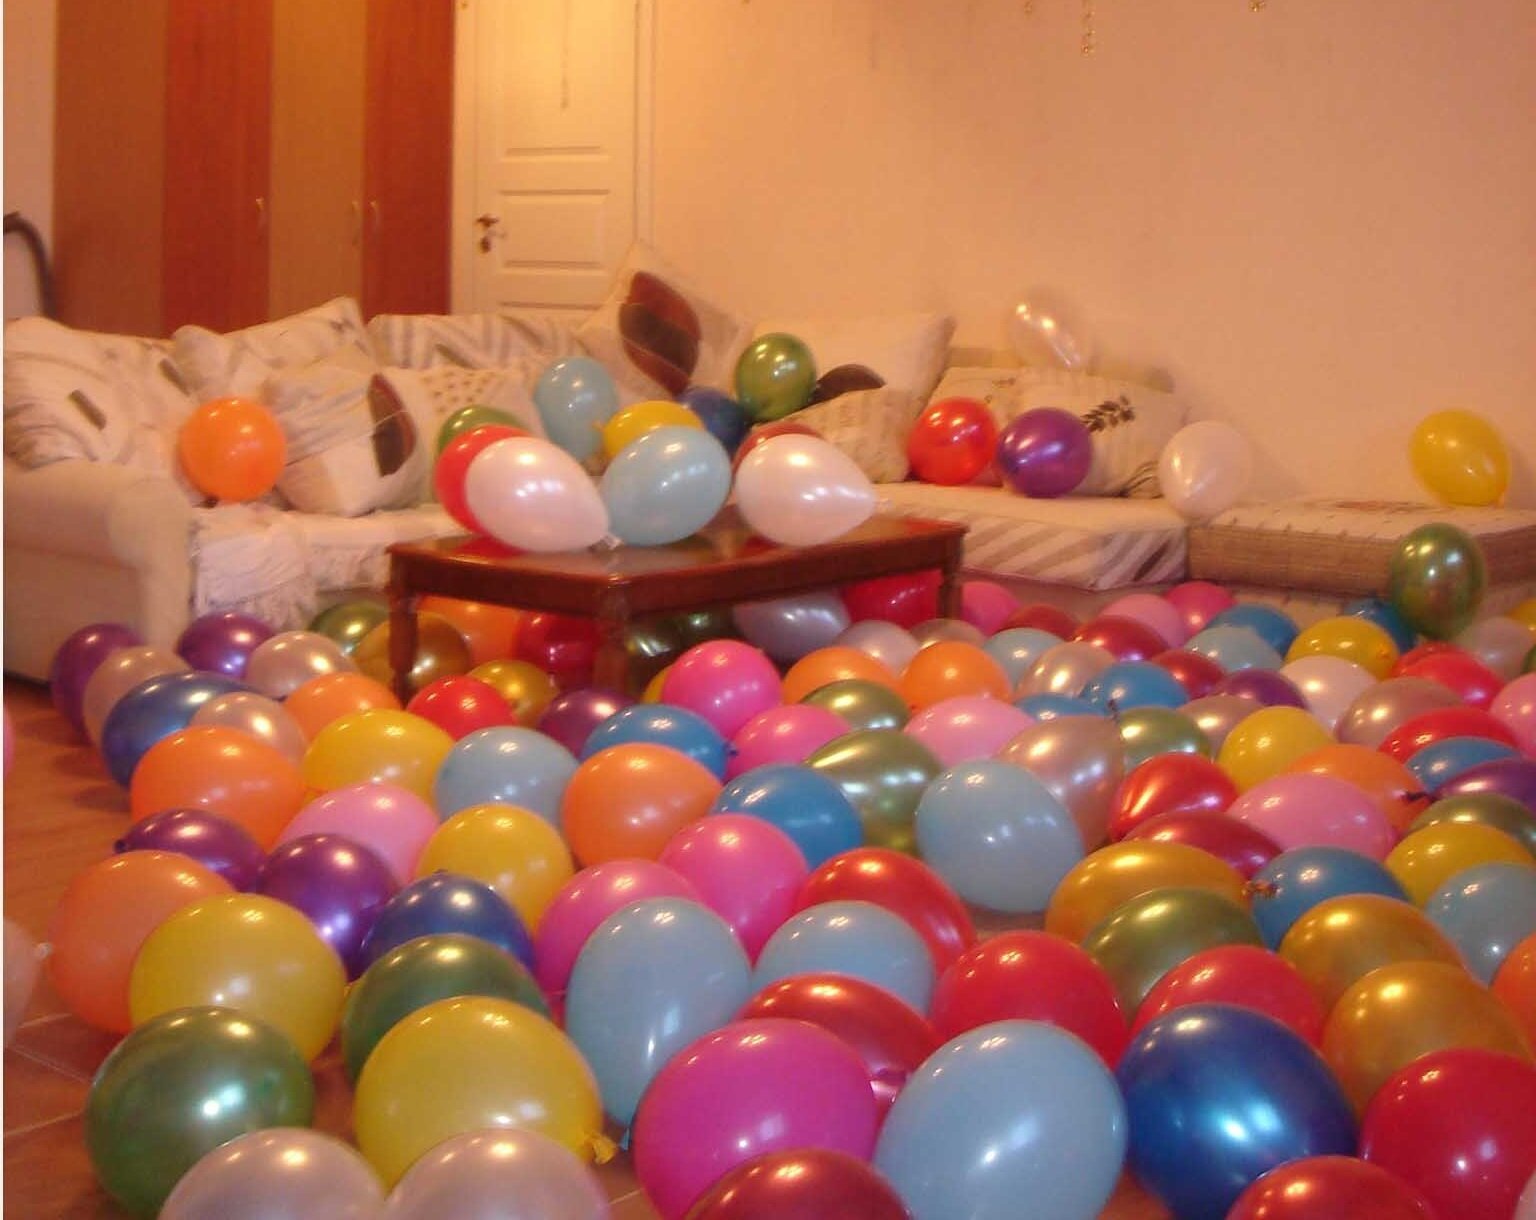 Купить дом шарами. Шары в комнате. Воздушные шары в комнате. Украсить комнату шарами. Комната с воздушными шарами.